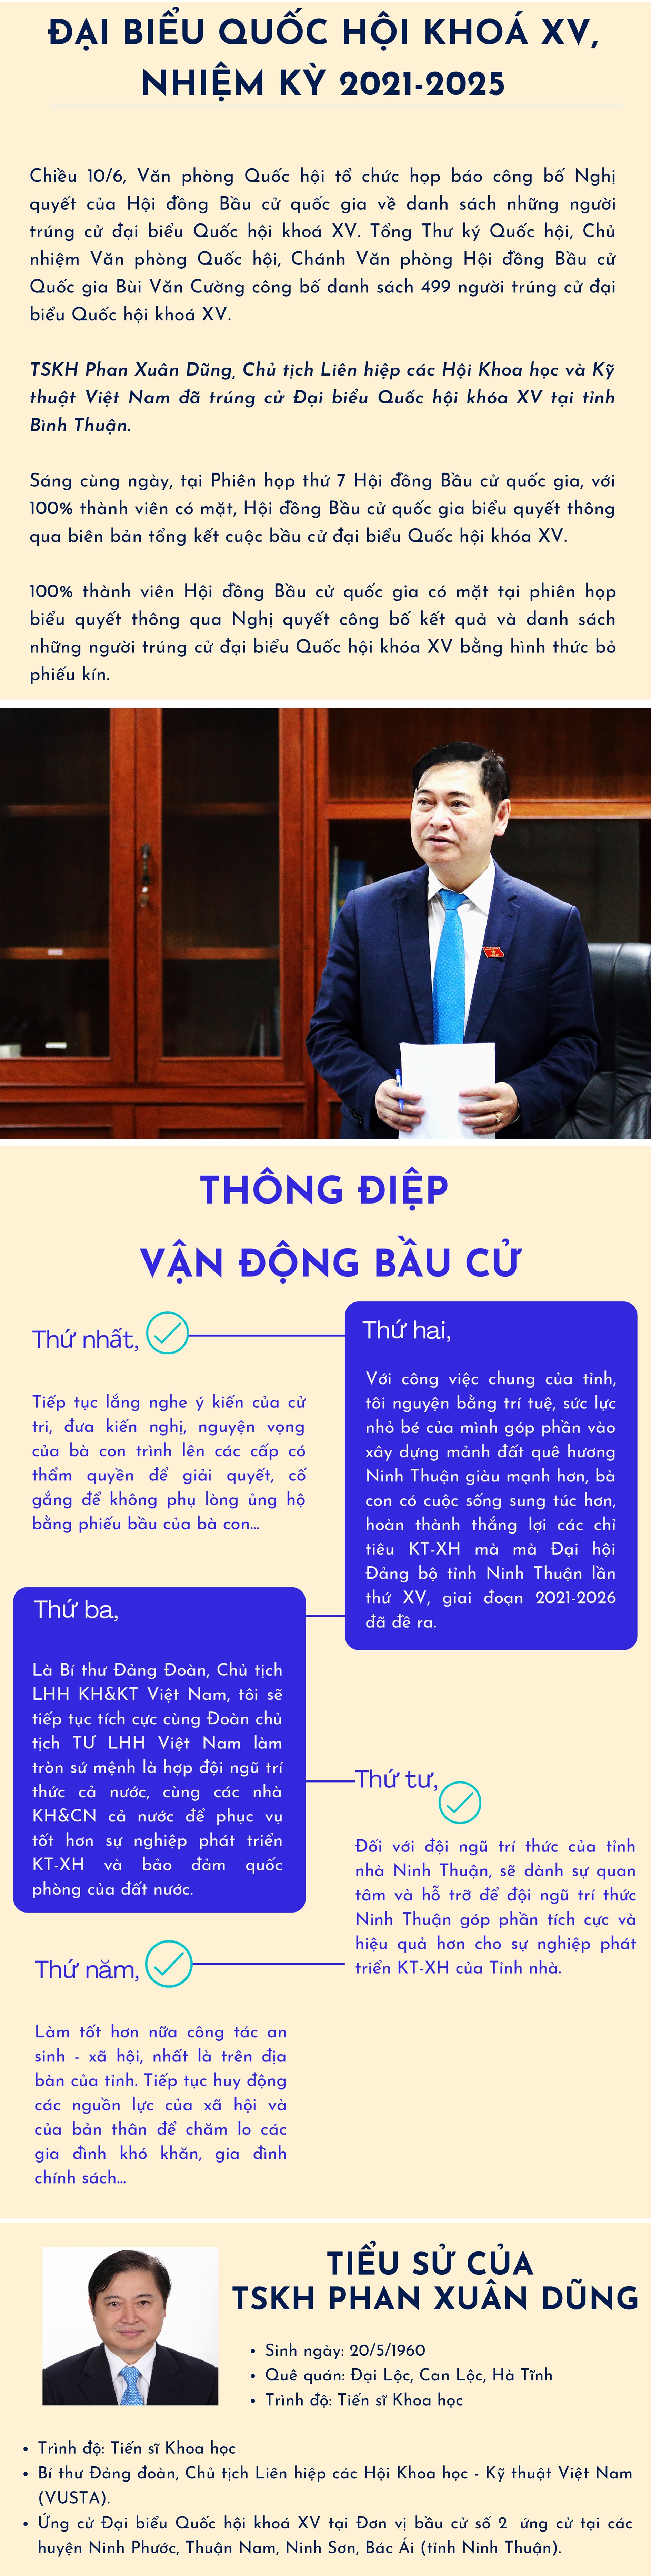 [Infographic] Chu tich VUSTA Phan Xuan Dung trung cu Dai bieu Quoc hoi khoa XV, nhiem ky 2021-2025